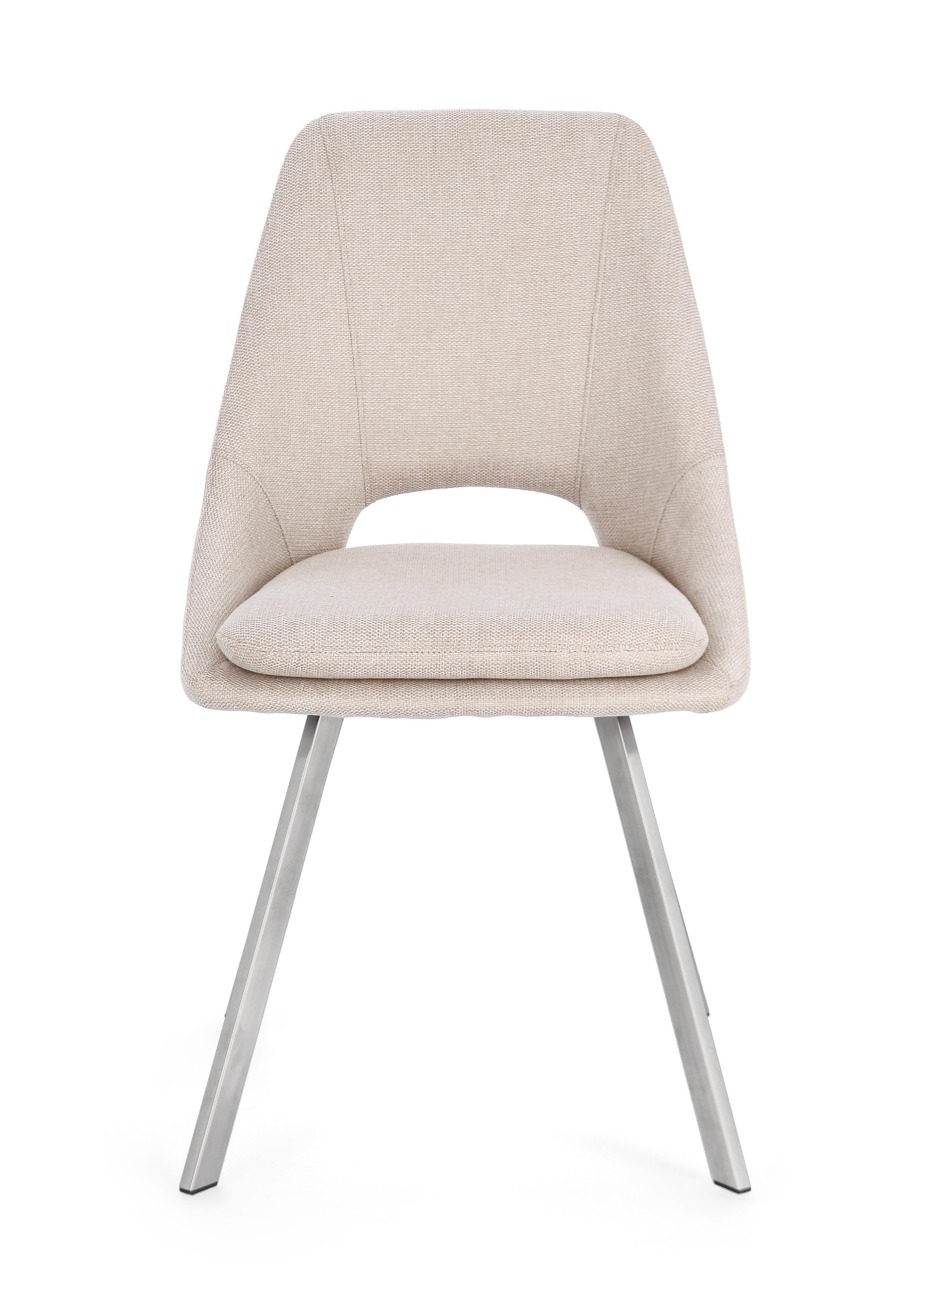 Der Esszimmerstuhl Kashar überzeugt mit seinem modernen Stil. Gefertigt wurde er aus Stoff, welcher einen Beigen Farbton besitzt. Das Gestell ist aus Edelstahl und hat eine silberne Farbe. Der Stuhl besitzt eine Sitzhöhe von 49 cm.